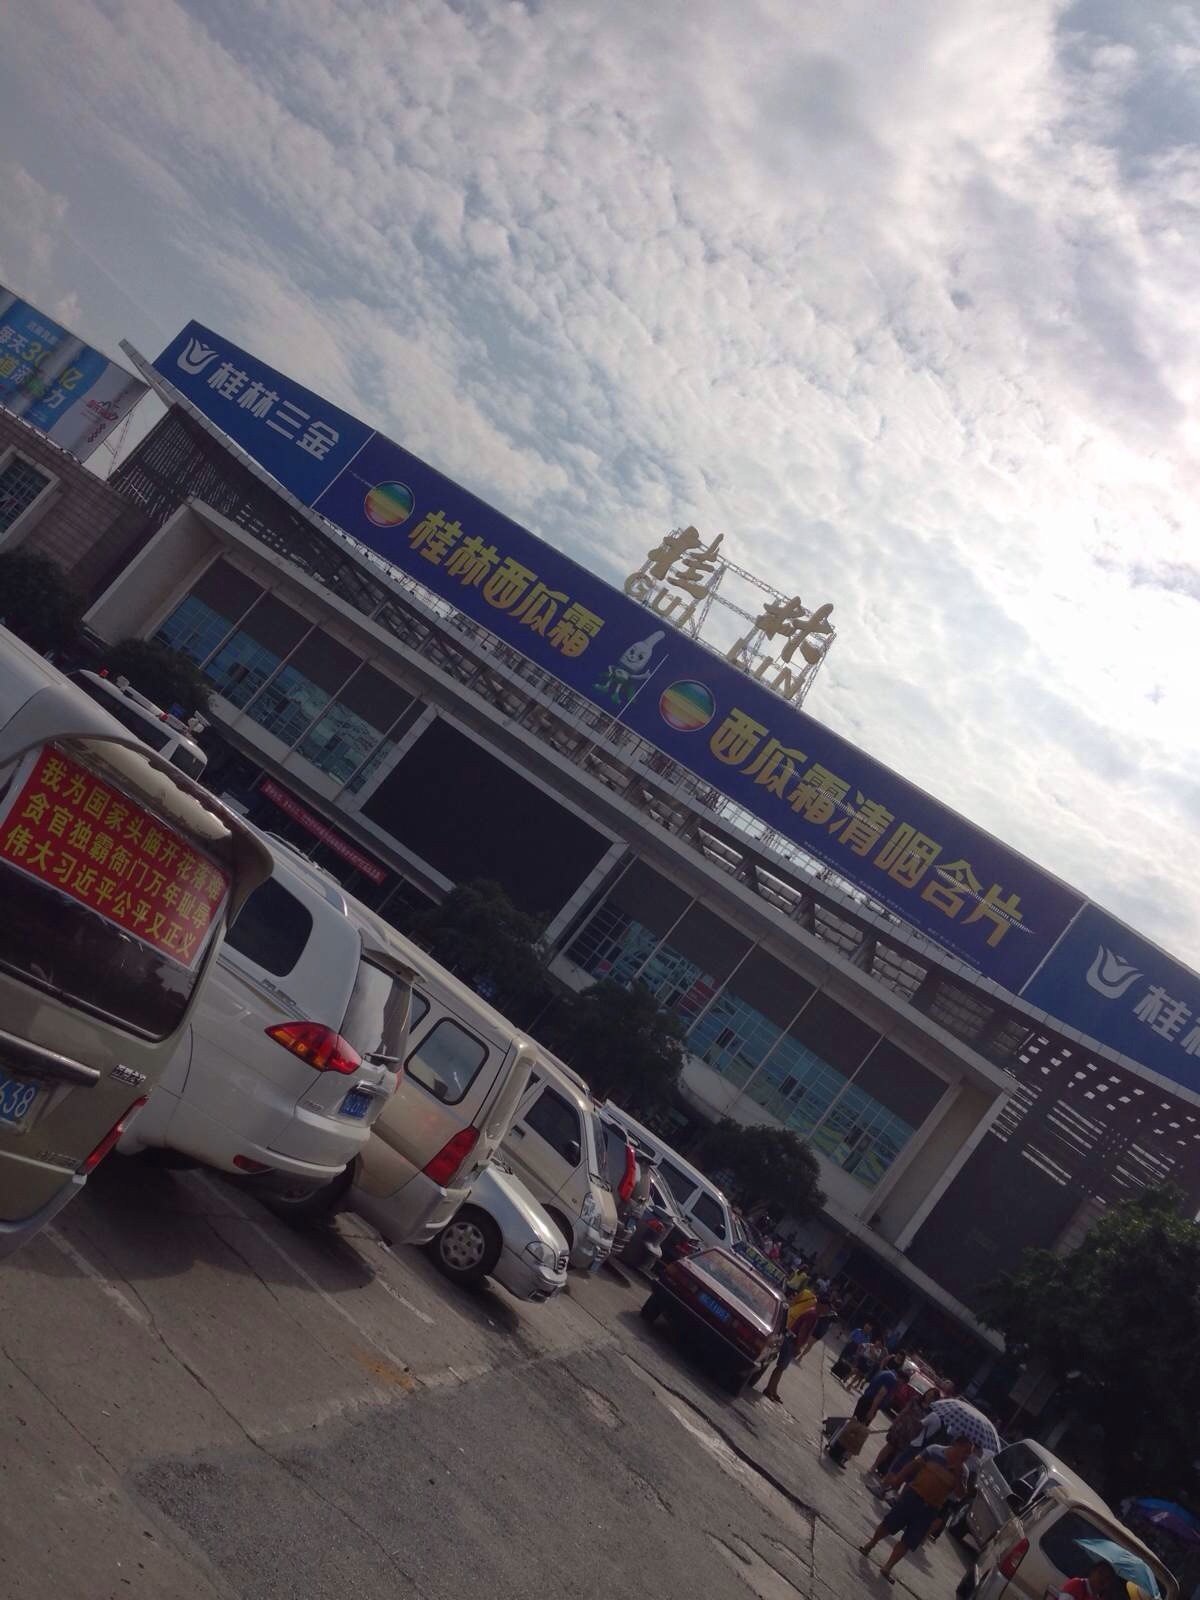 桂林火车站图图片